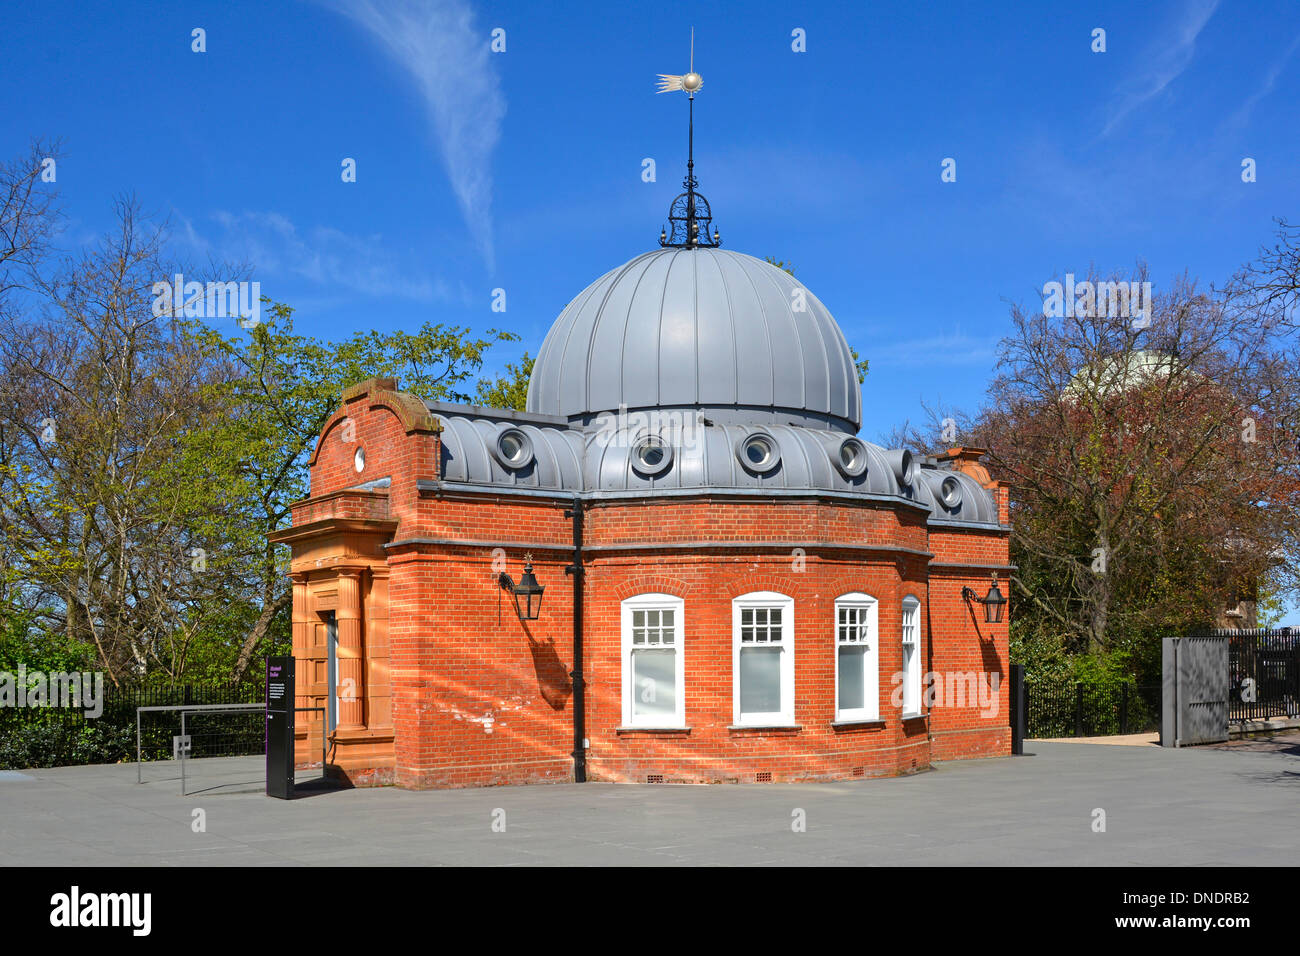 Pavillon victorien historique en brique Altazimuth et dôme au Royal Greenwich Observatoire faisant partie du Musée maritime national de Greenwich Park Londres Angleterre ROYAUME-UNI Banque D'Images